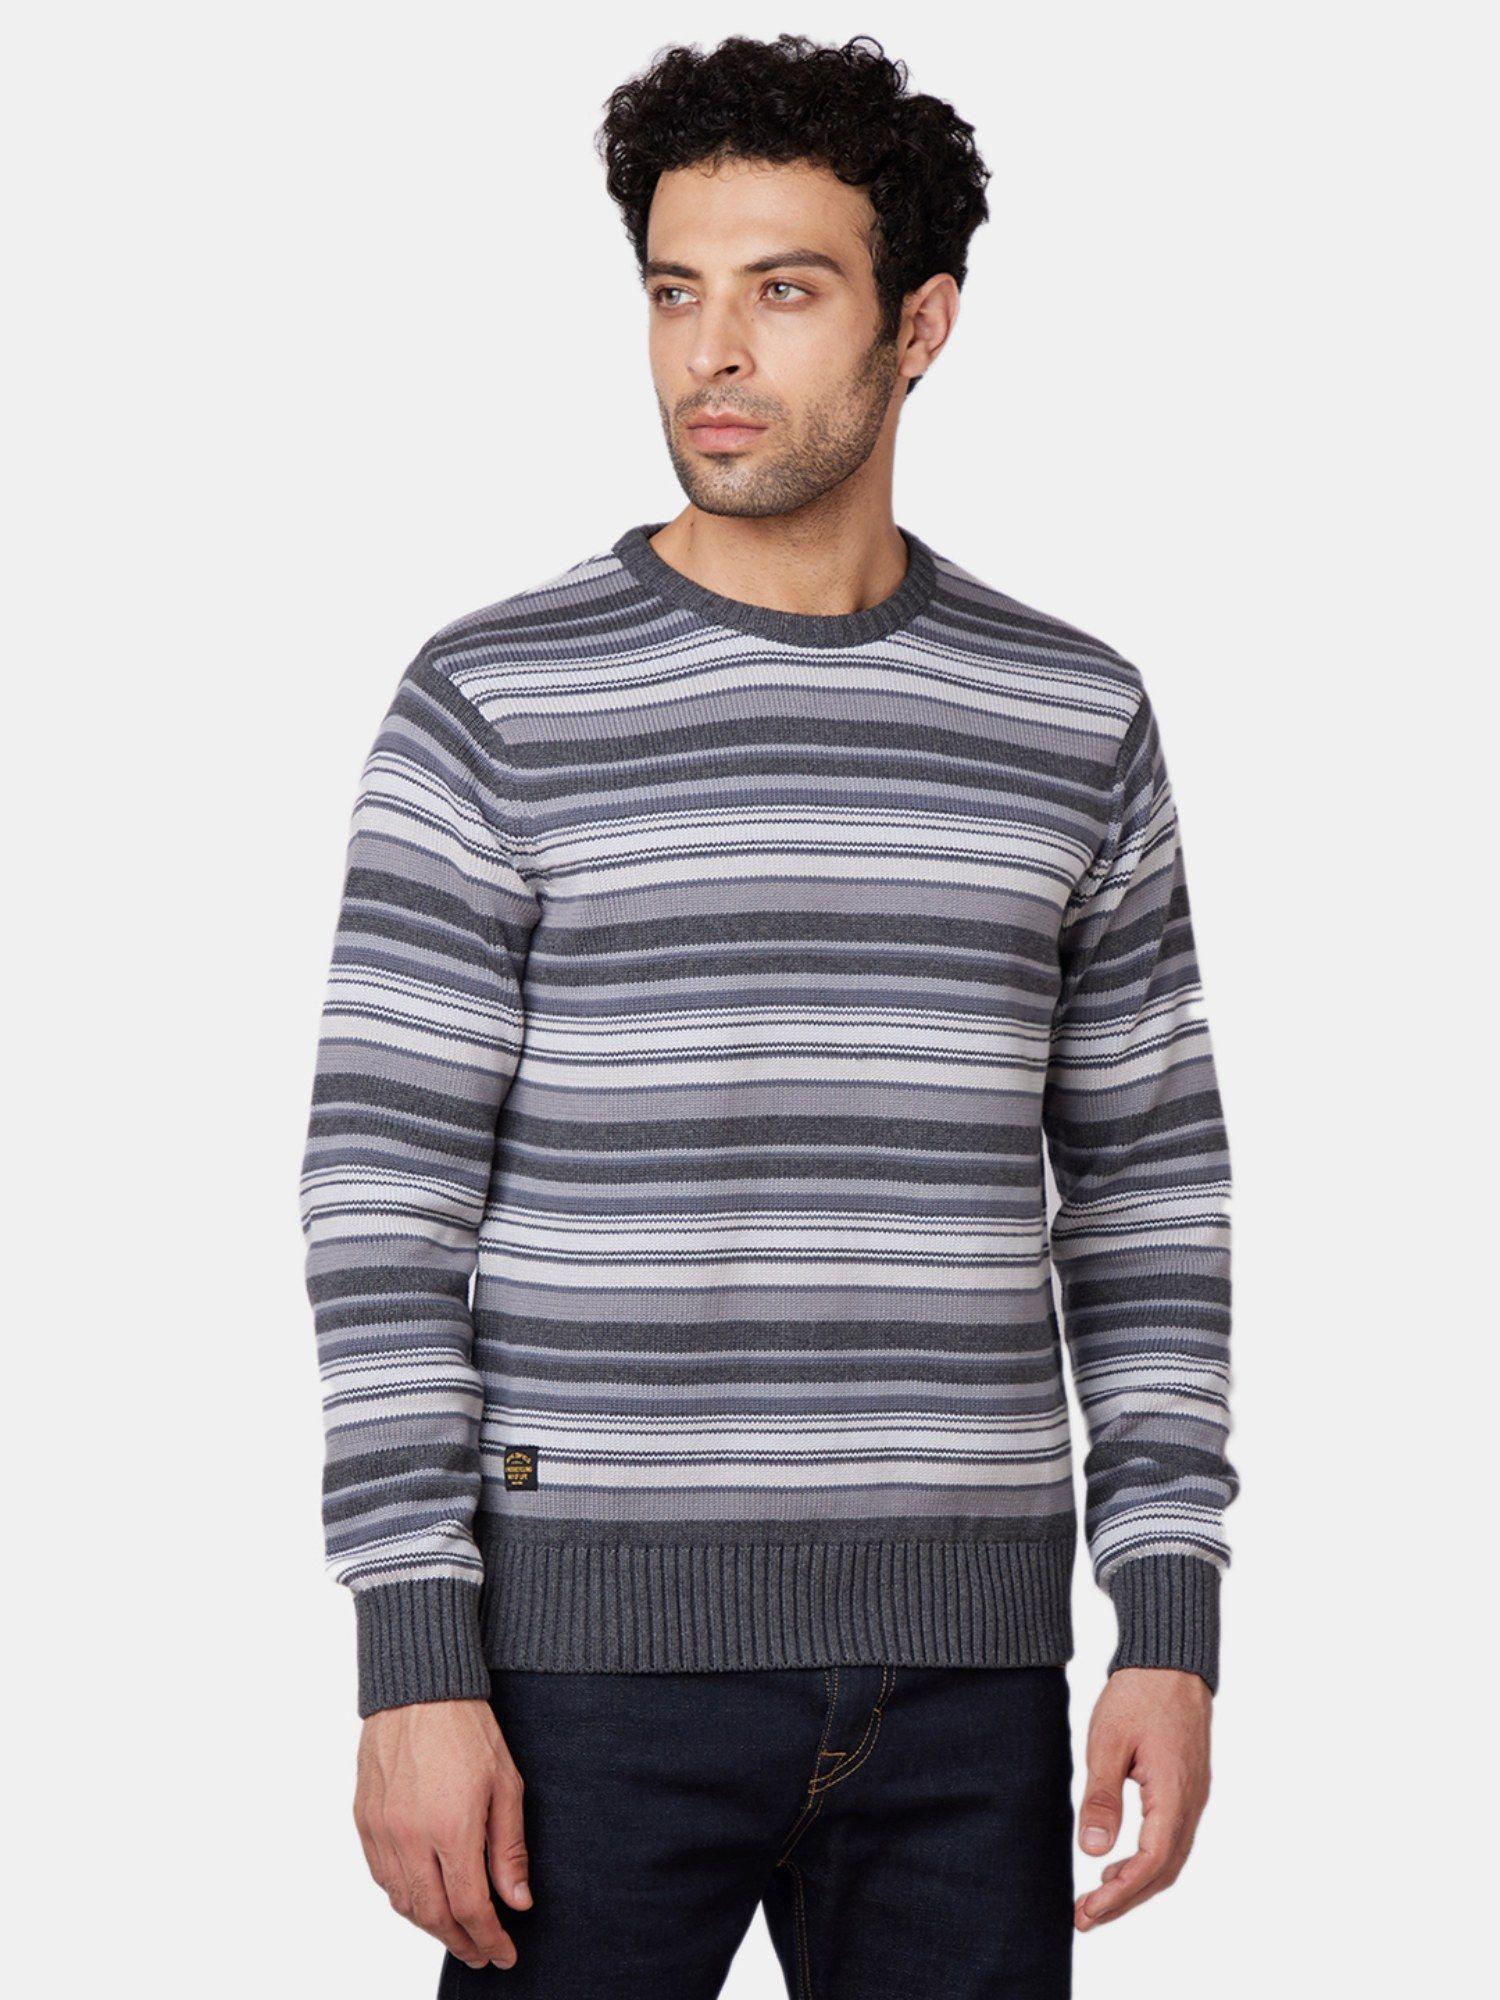 preppy grey sweater